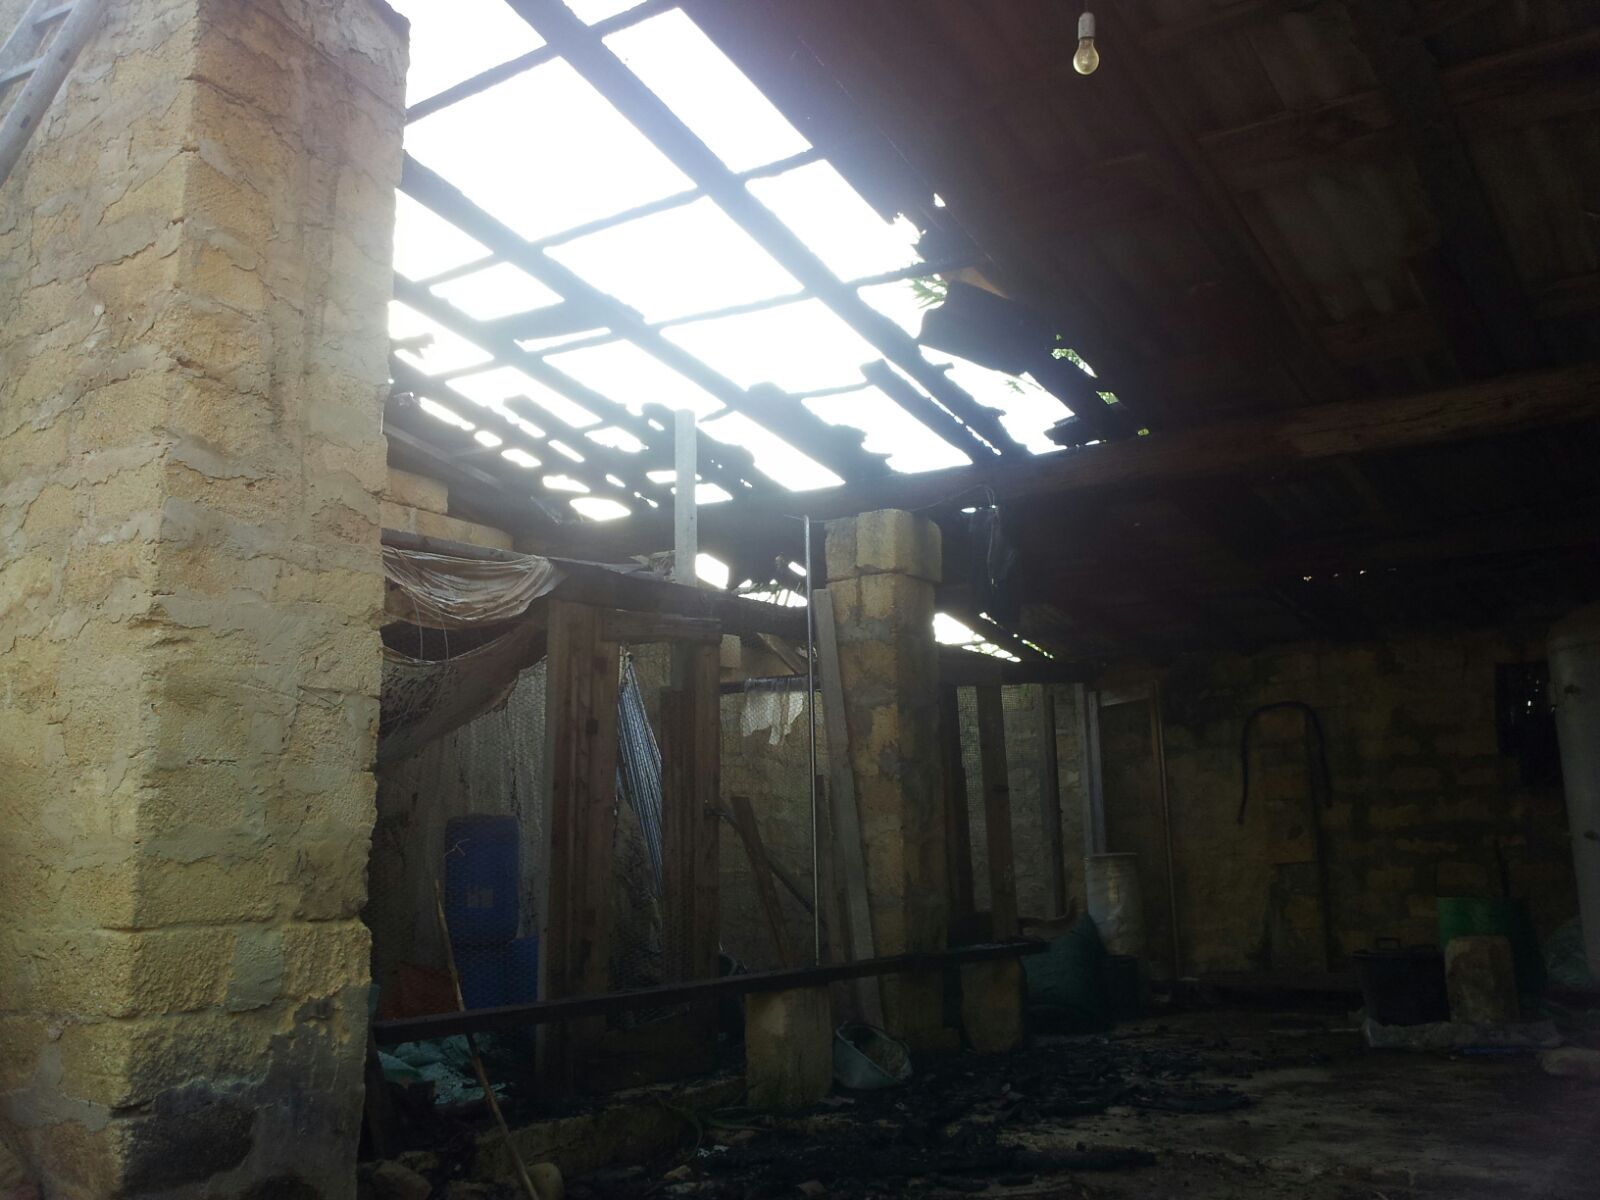 Incendio accidentale a Gravano: brucia una tettoia